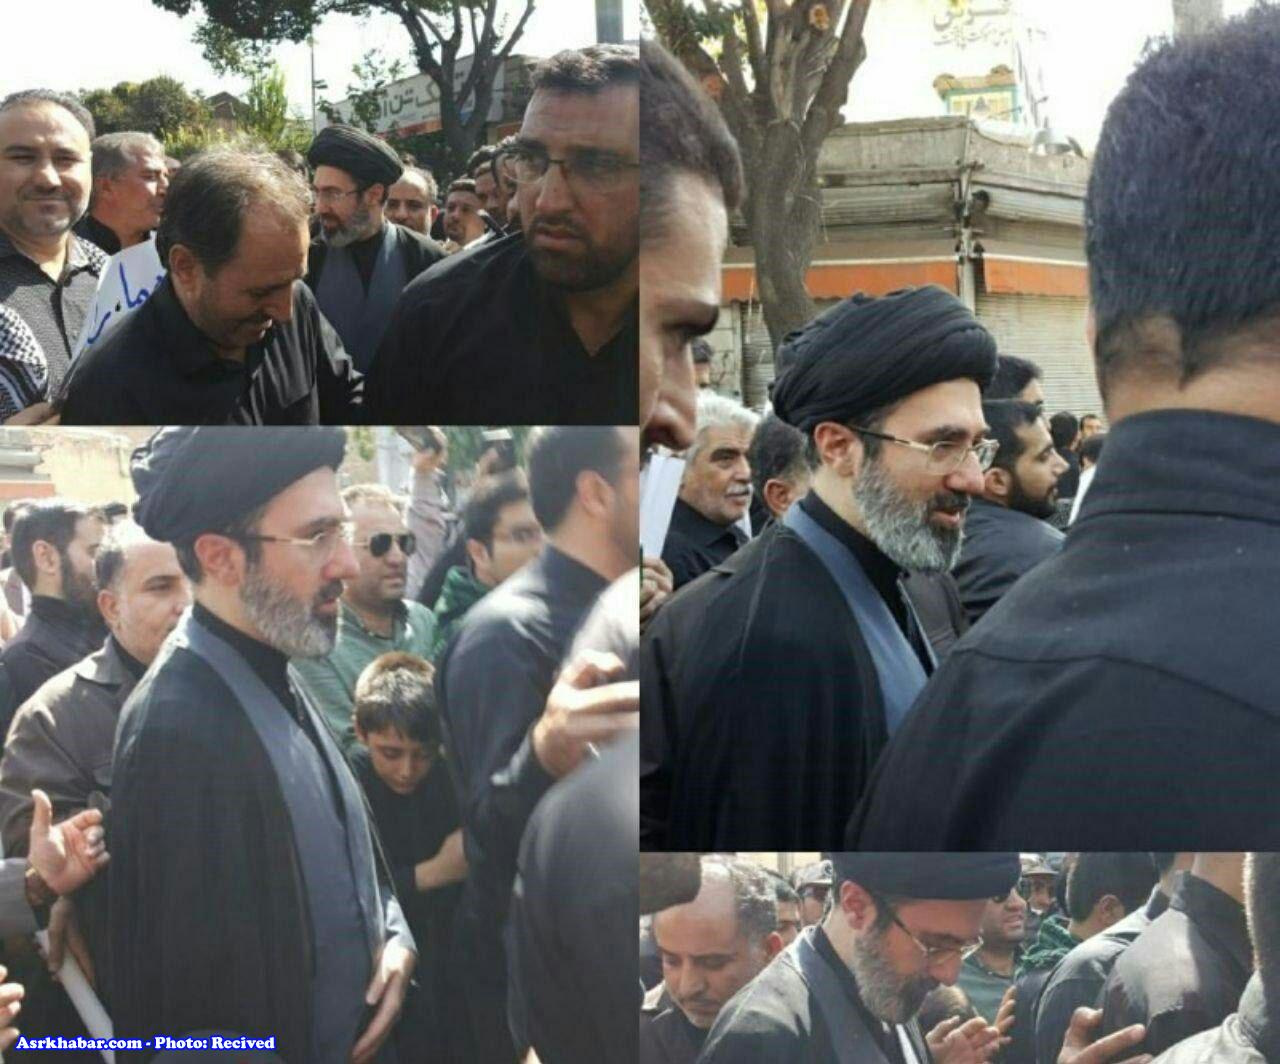 پسر مقام معظم رهبری در مراسم تشییع شهید حججی (+عکس)